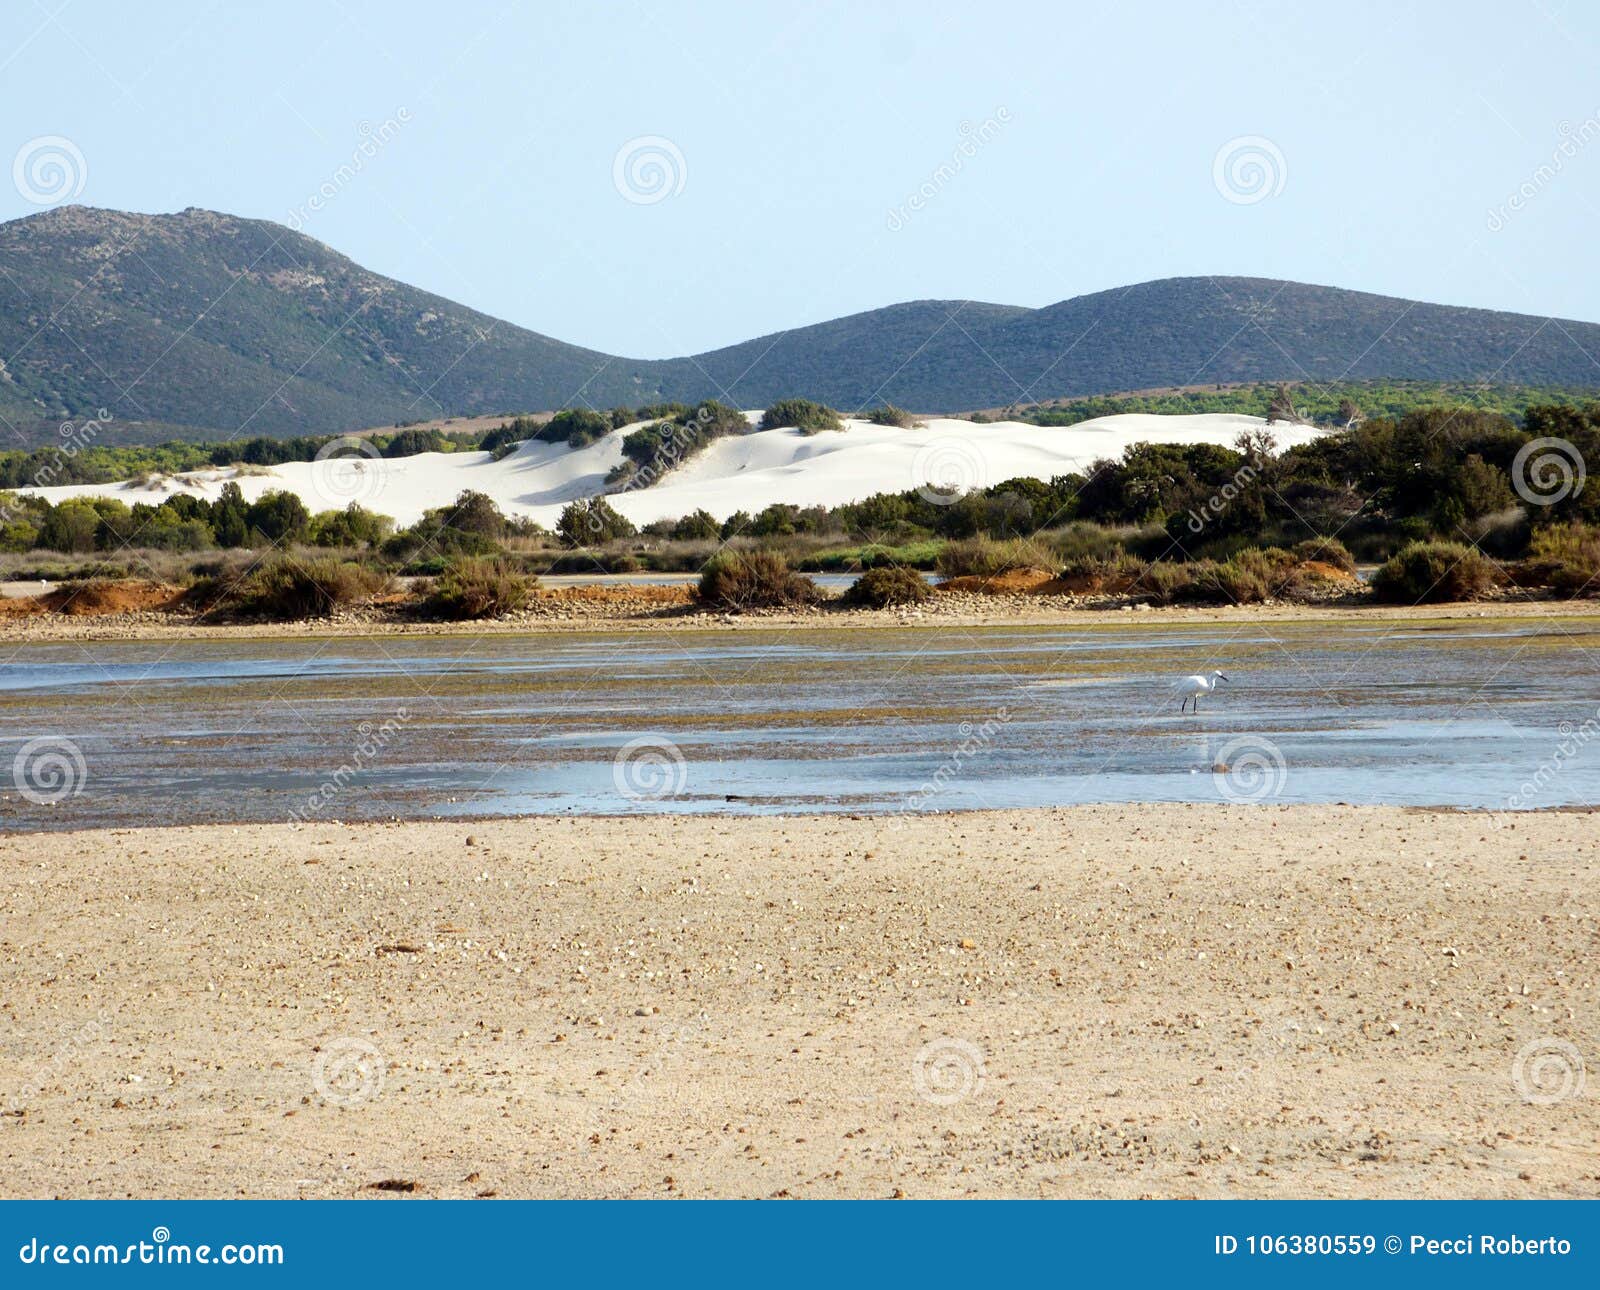 italy, sardinia, carbonia iglesias, porto pino, the pond behind the white sand dunes